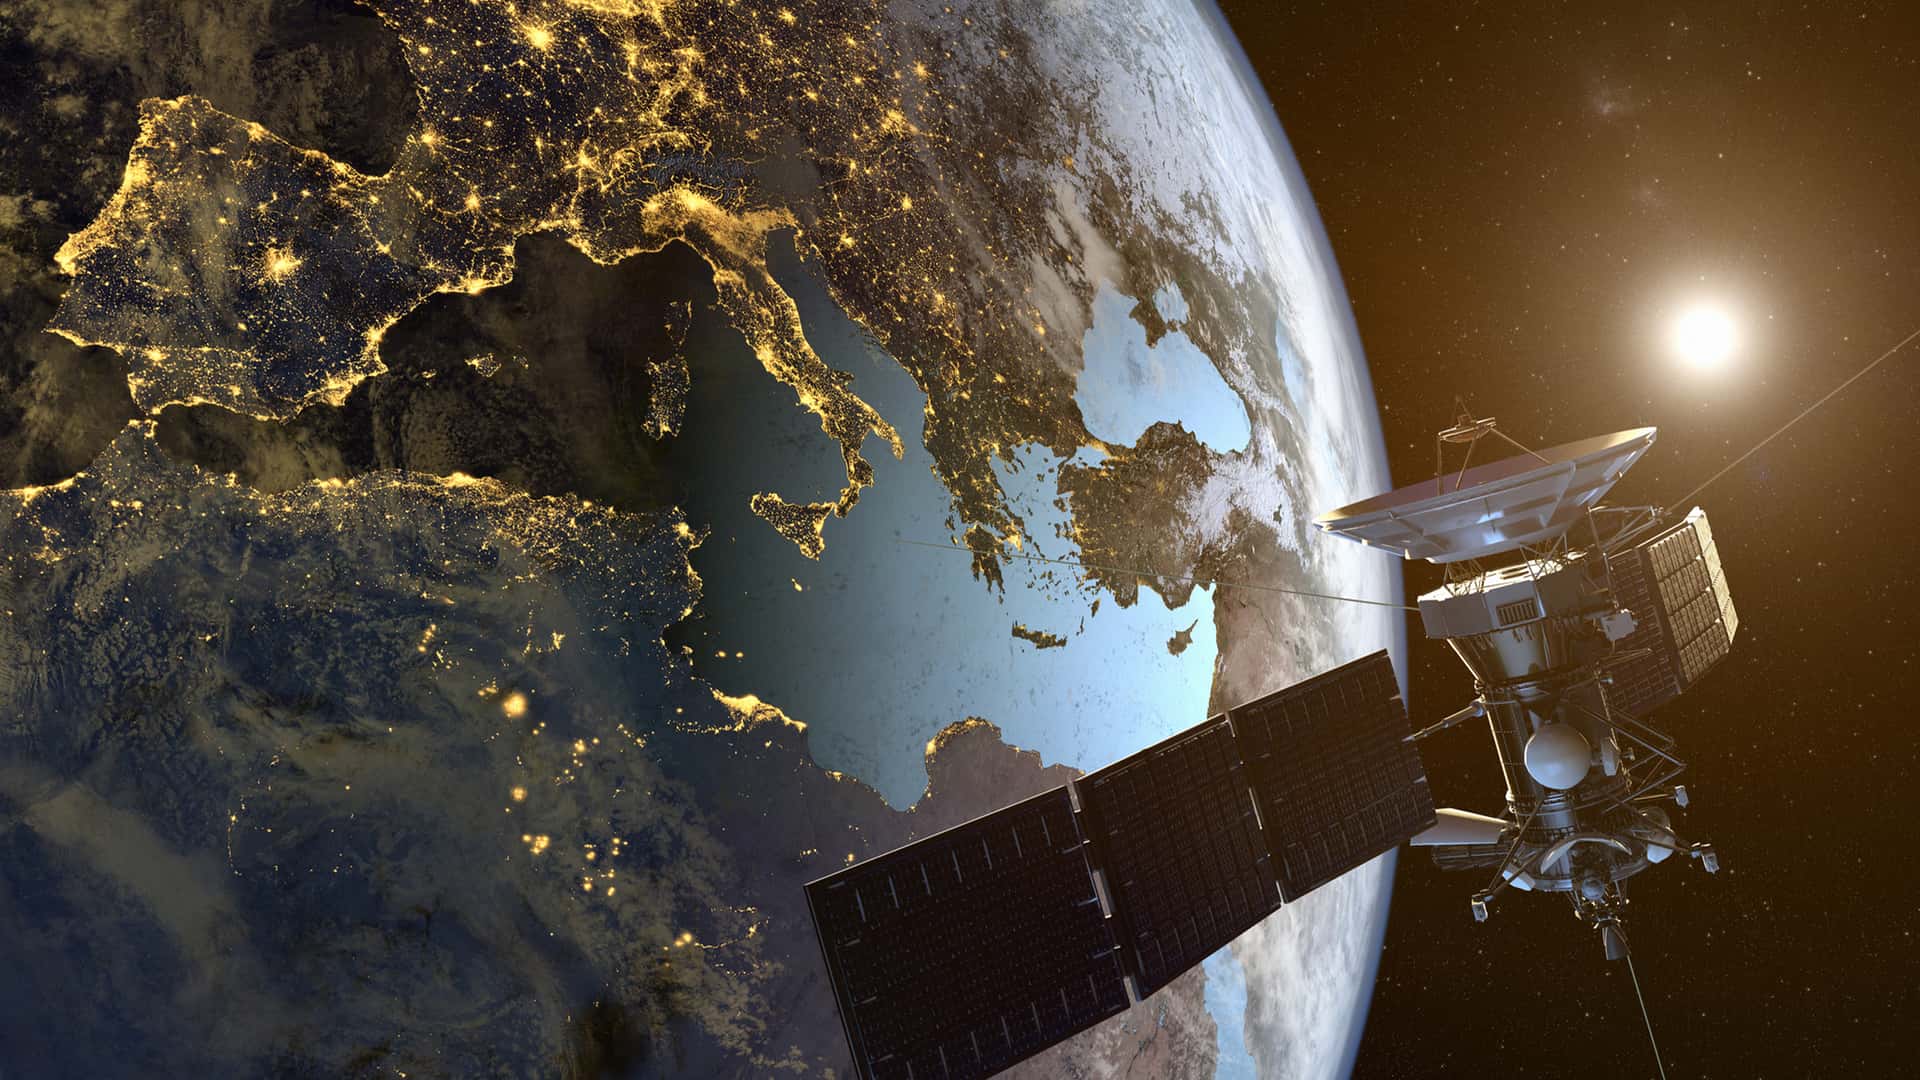 Satélite orbitando sobre la tierra simboliza fibra satélite de másmovil